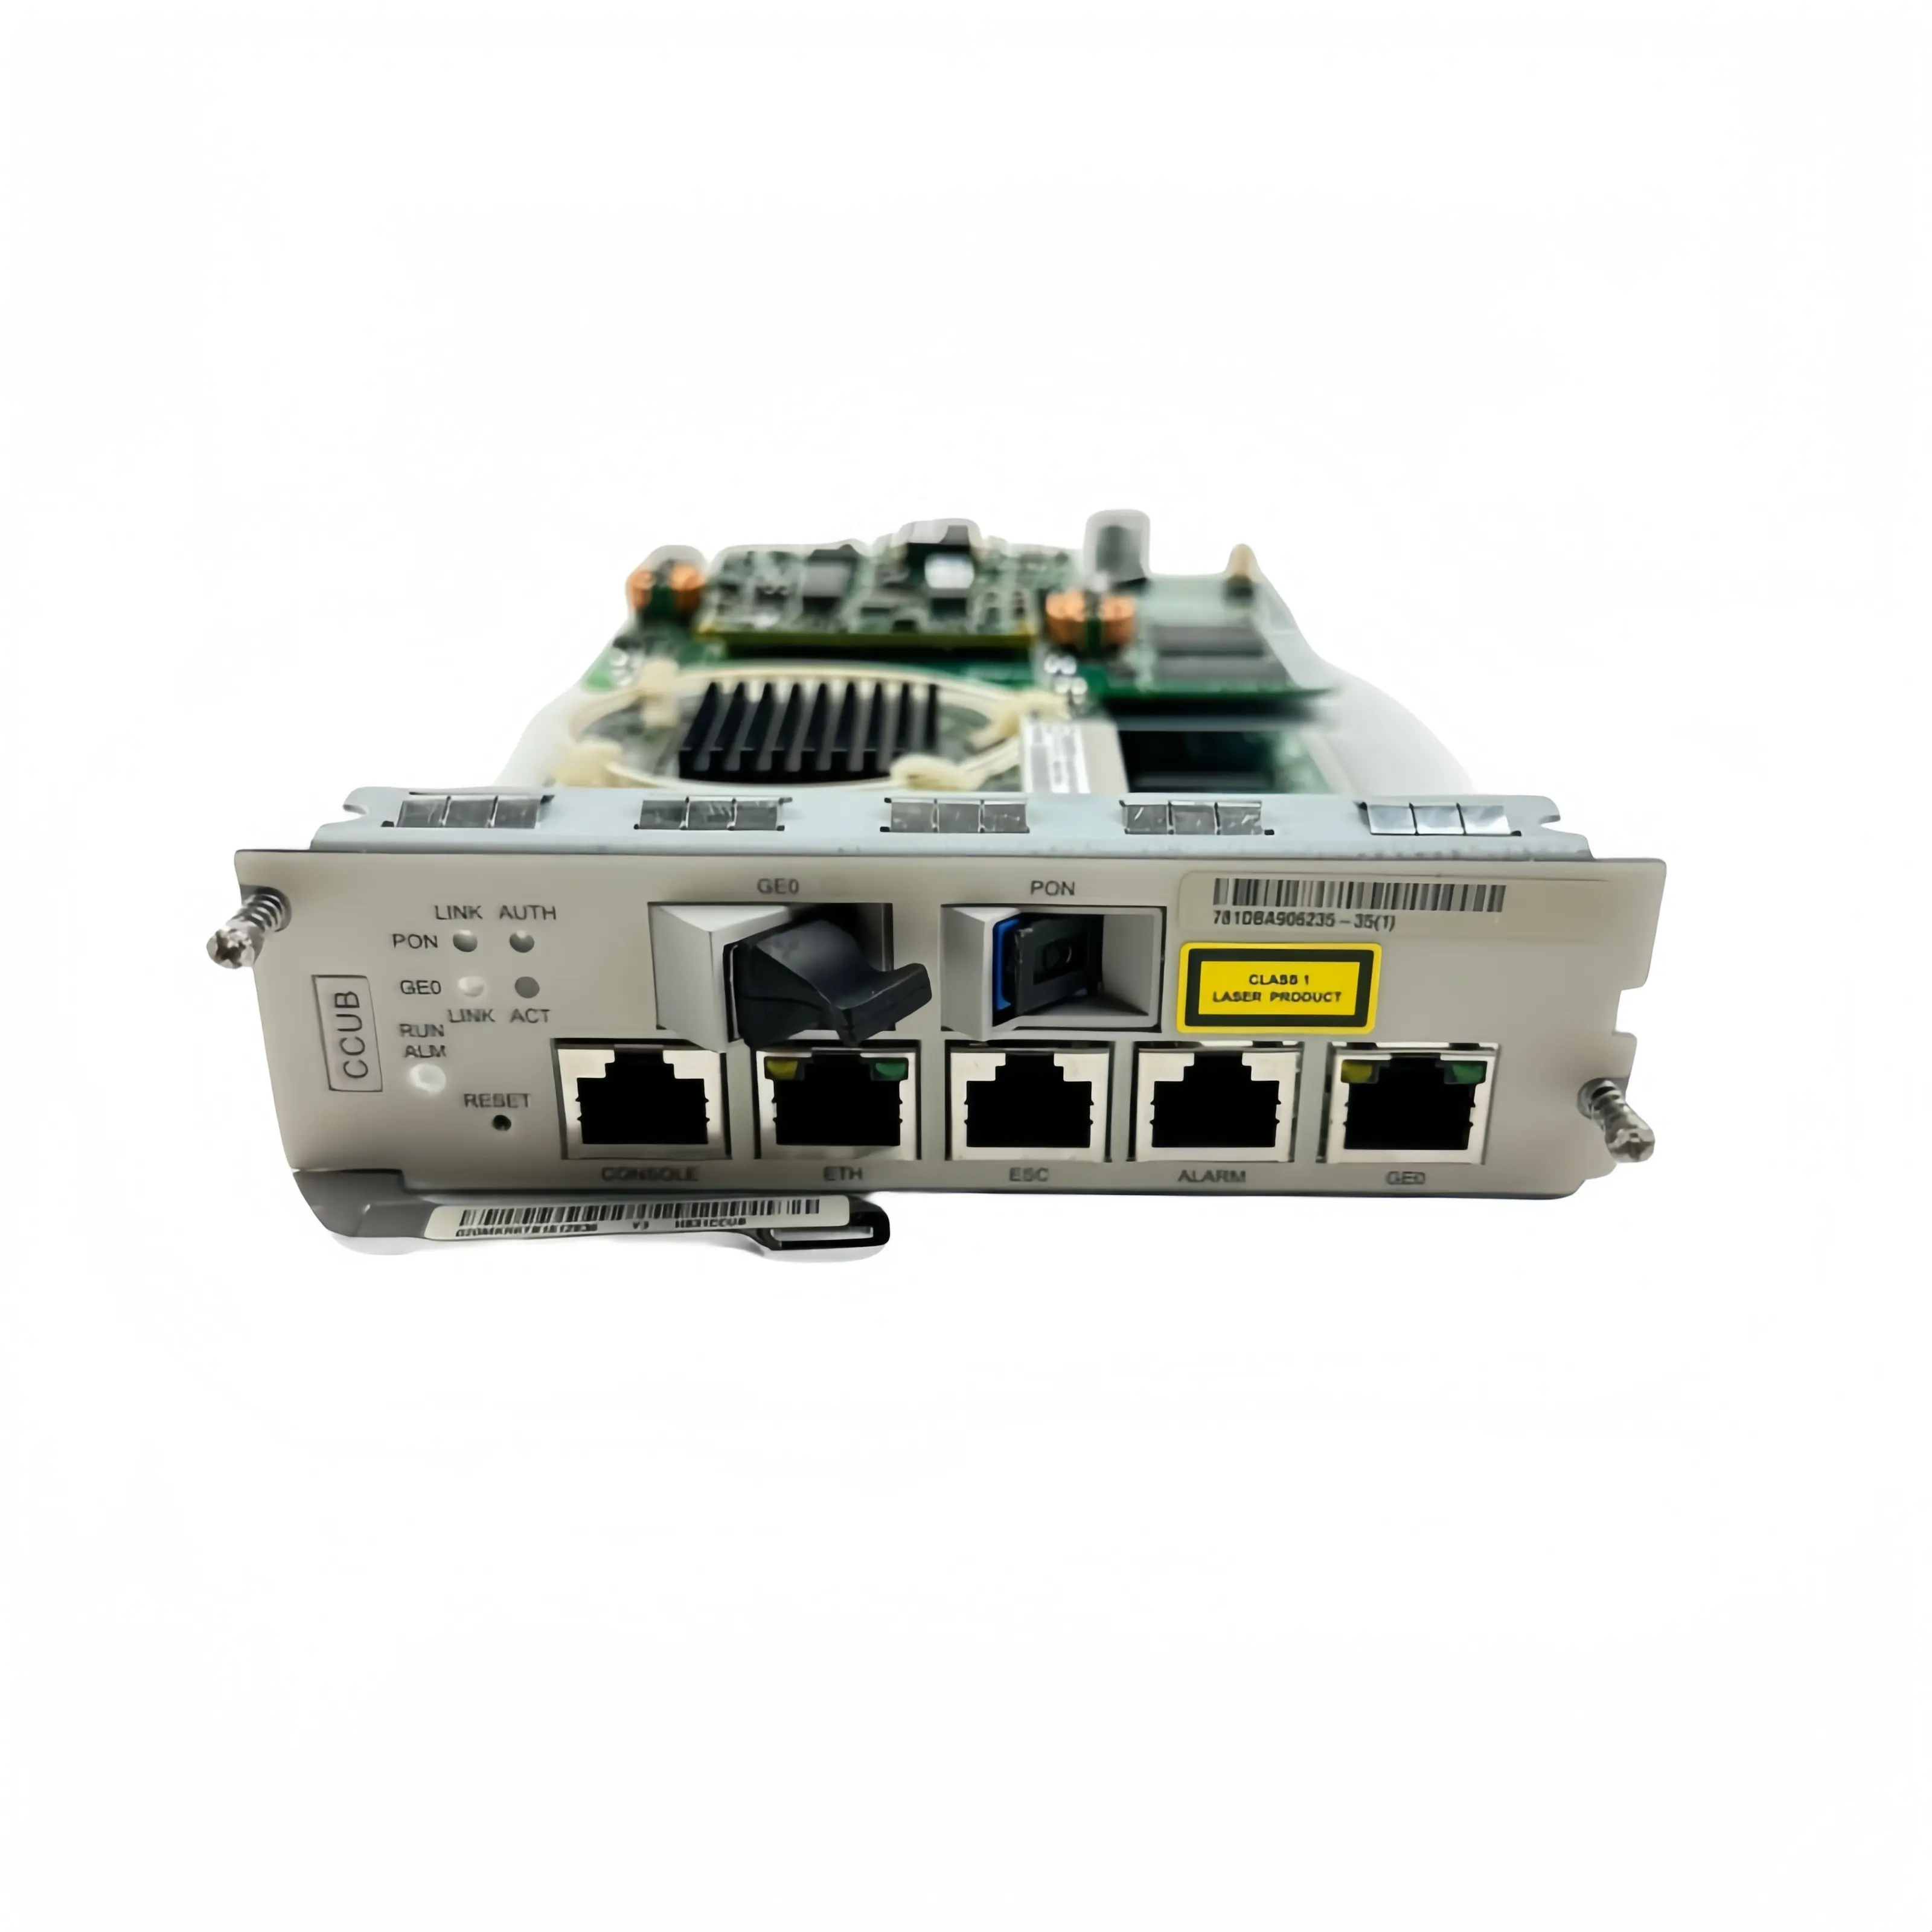 HW CCUB CCUC CCUD 10G GPON Uplink UP2A XP1A SmartAX Ma5616 MA5818 IP DSLAM para productos de telecomunicaciones ADSL2/VDSL2/SHDSL